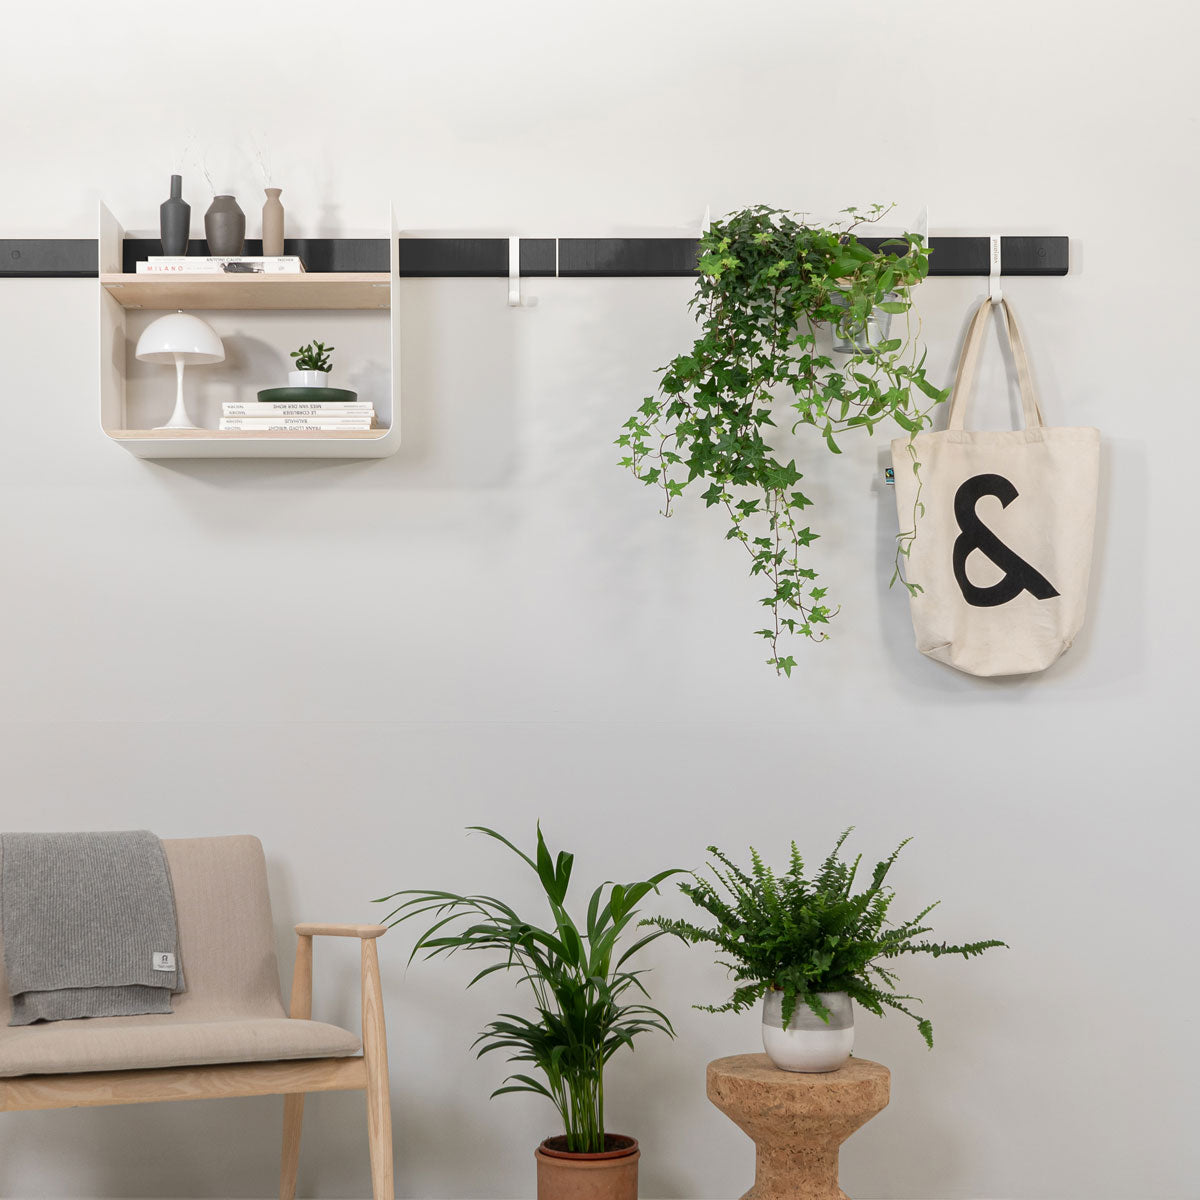 Wohnwand mit dekorativem Wandregal und Pflanzenregal mit Hängepflanze an einer schwarzen Wandleiste